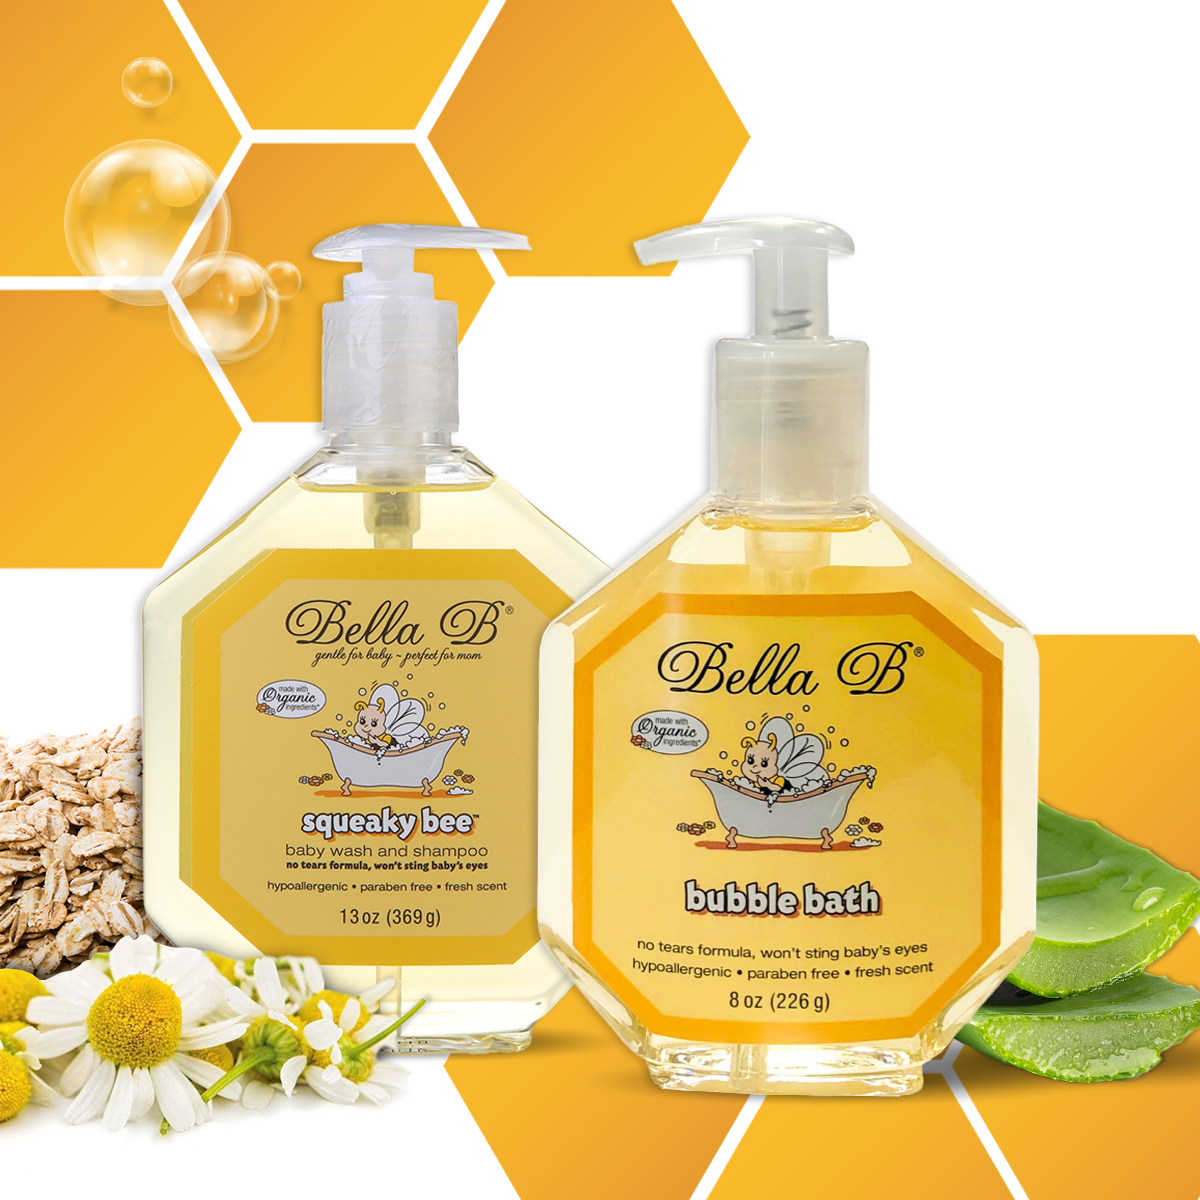 Bella B Bundle - Squeaky Bee Baby Wash & Shampoo 13 oz and Bubble Bath 8 oz